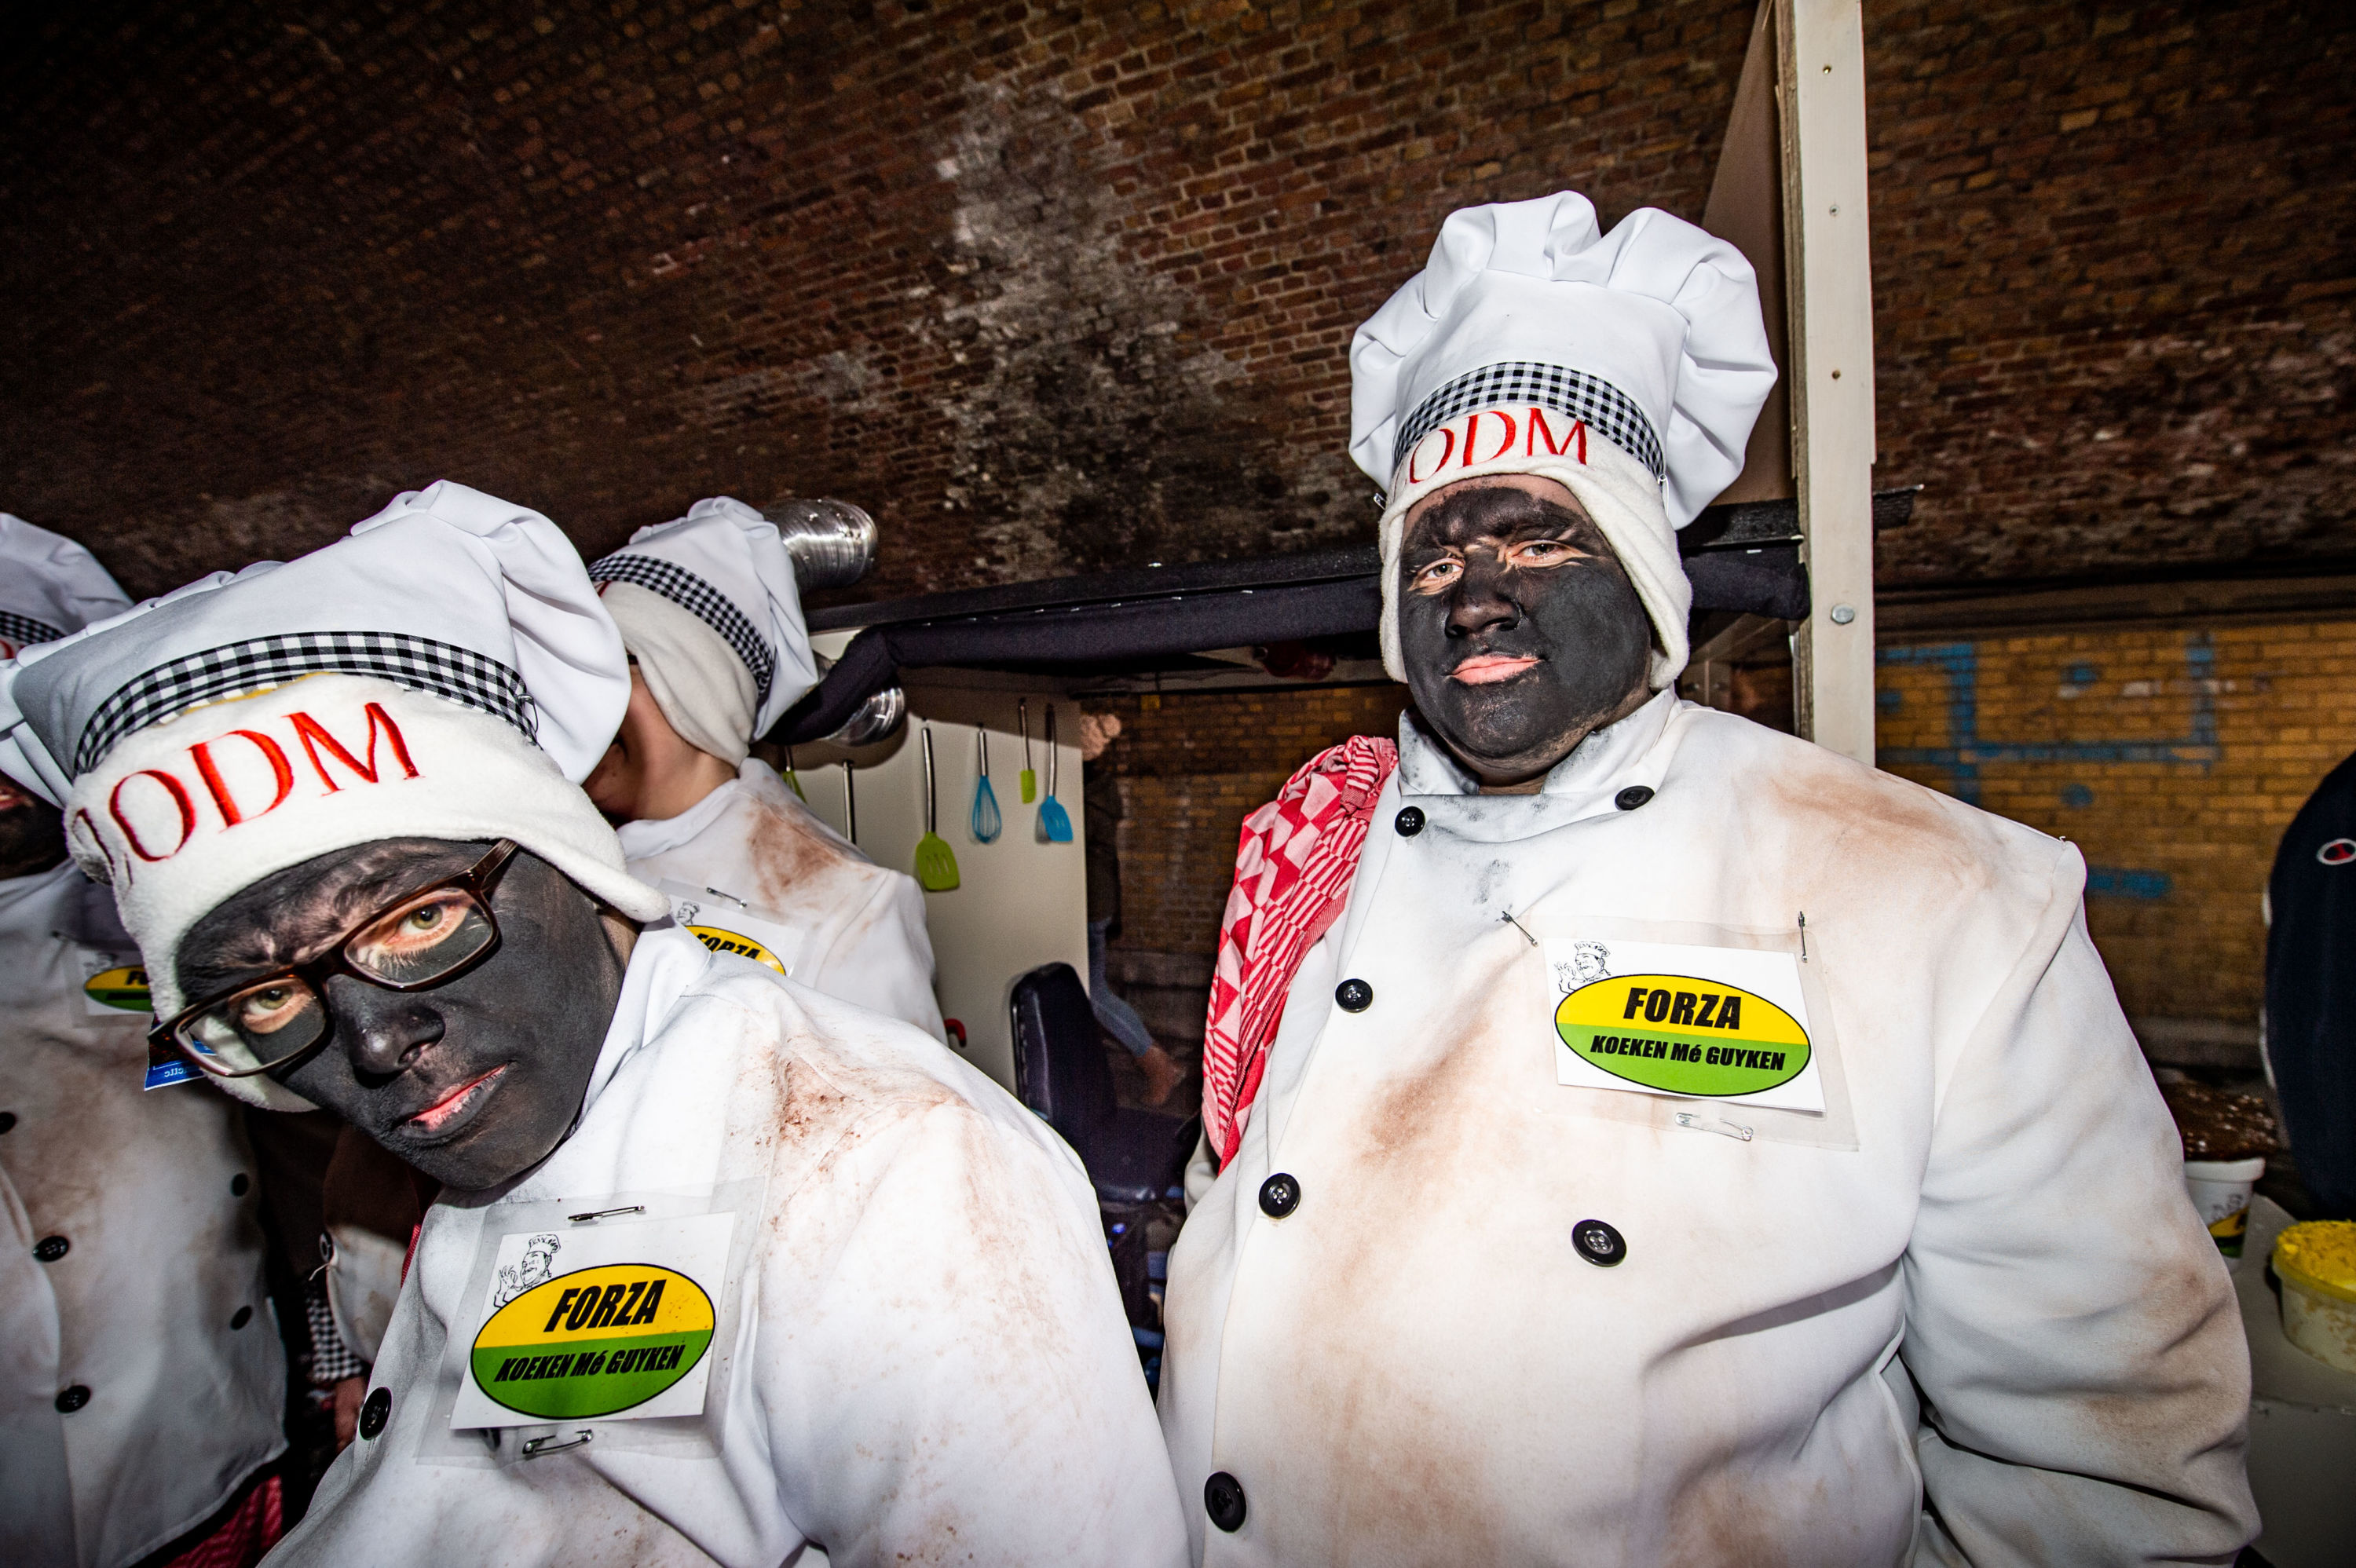 Schwyz – Les costumes du «KKK» à carnaval dénoncés